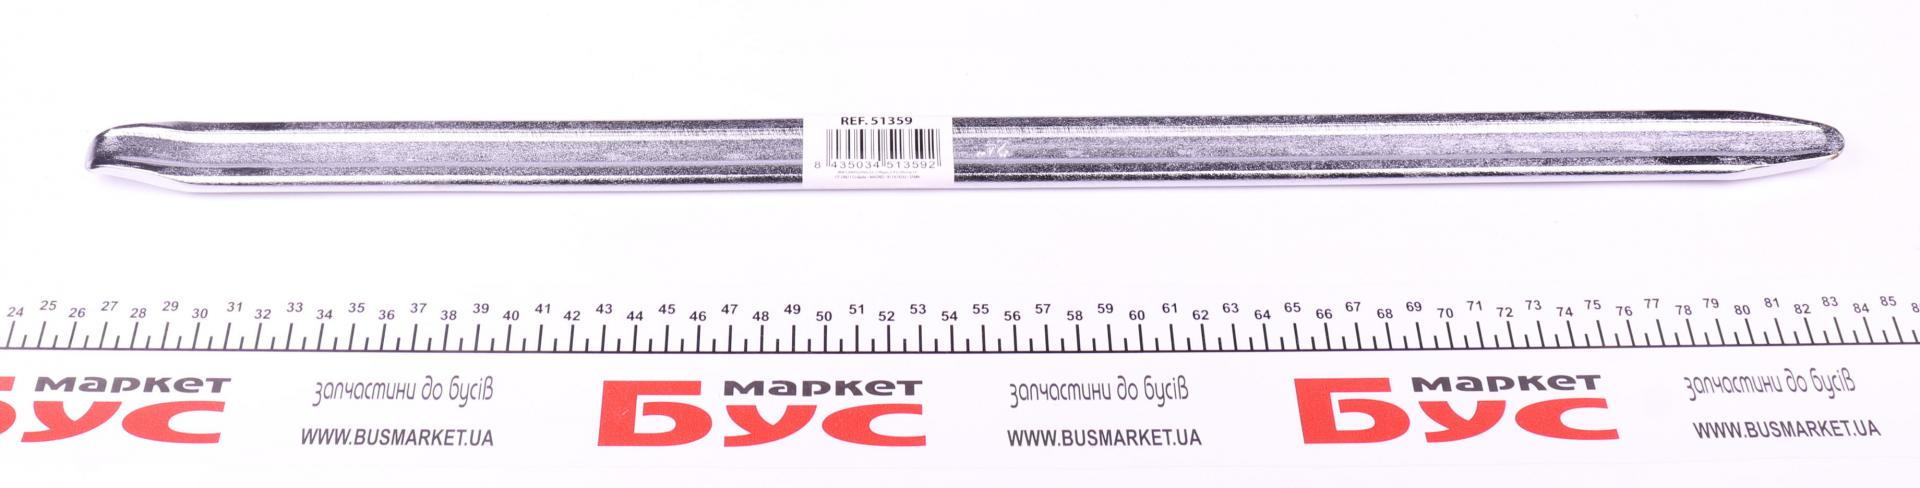 Монтировка (24''x60,96cm) JBM 51359